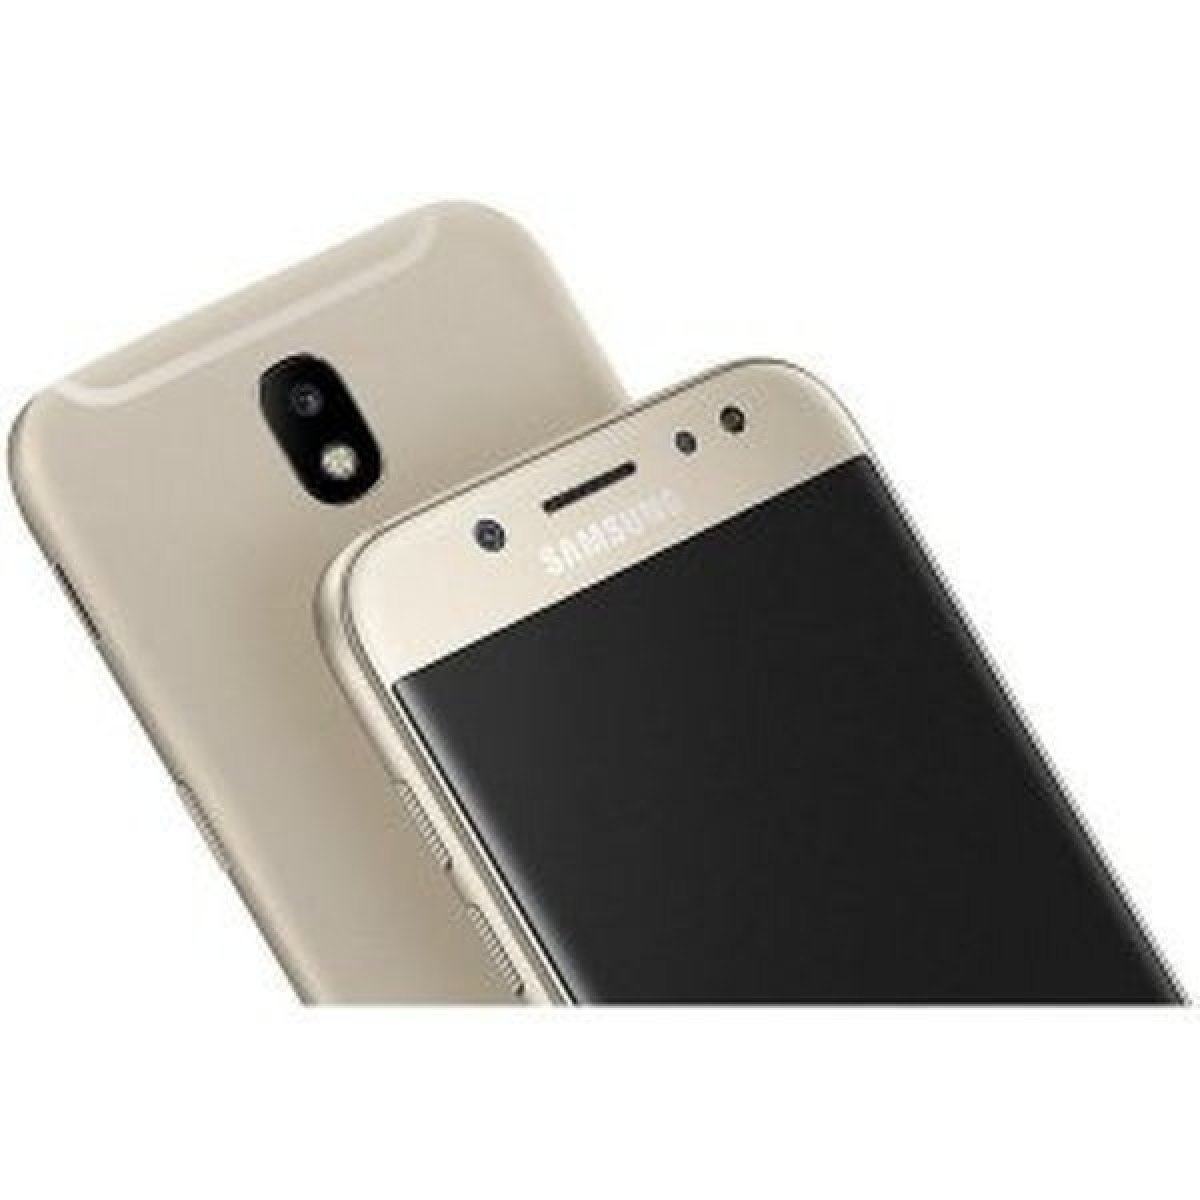 Samsung Galaxy J5 2017 J530F Dual SIM od 109 € - Heureka.sk